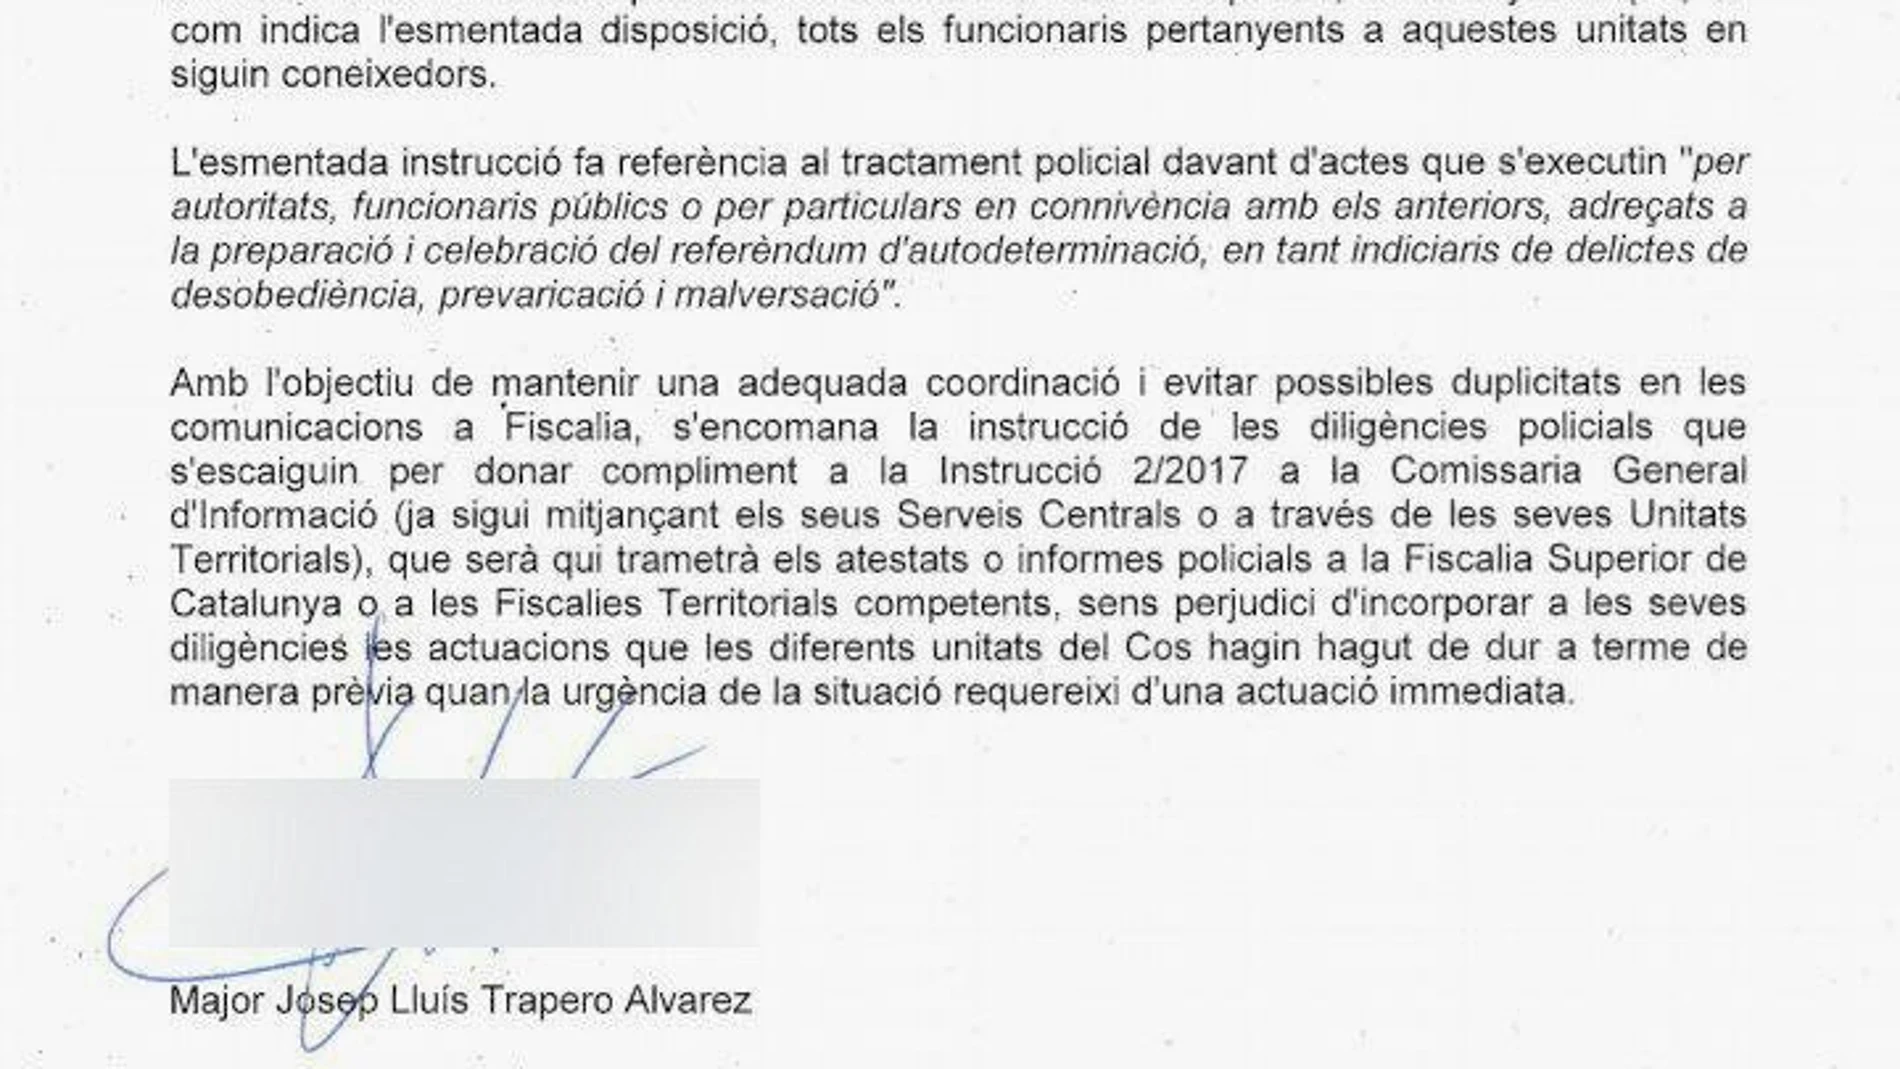 Comunicado interno del mayor de los Mossos d'Esquadra, dirigido a "todas las unidades"de la policía catalana